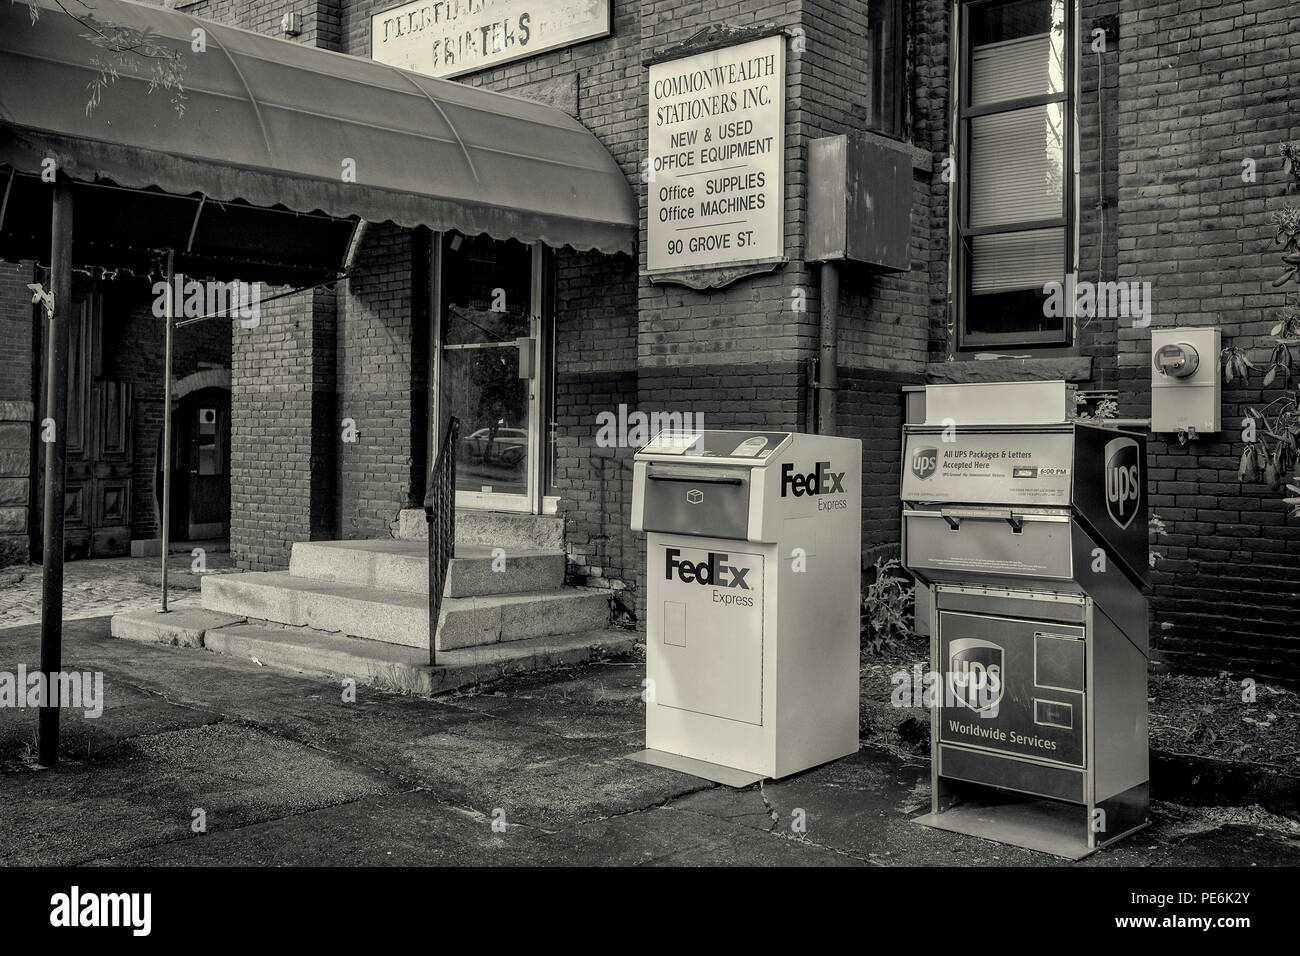 Dos cajas - UPS y Fedex - delante de Commonwealth libreros en Grove Street en Worcester, MA Foto de stock